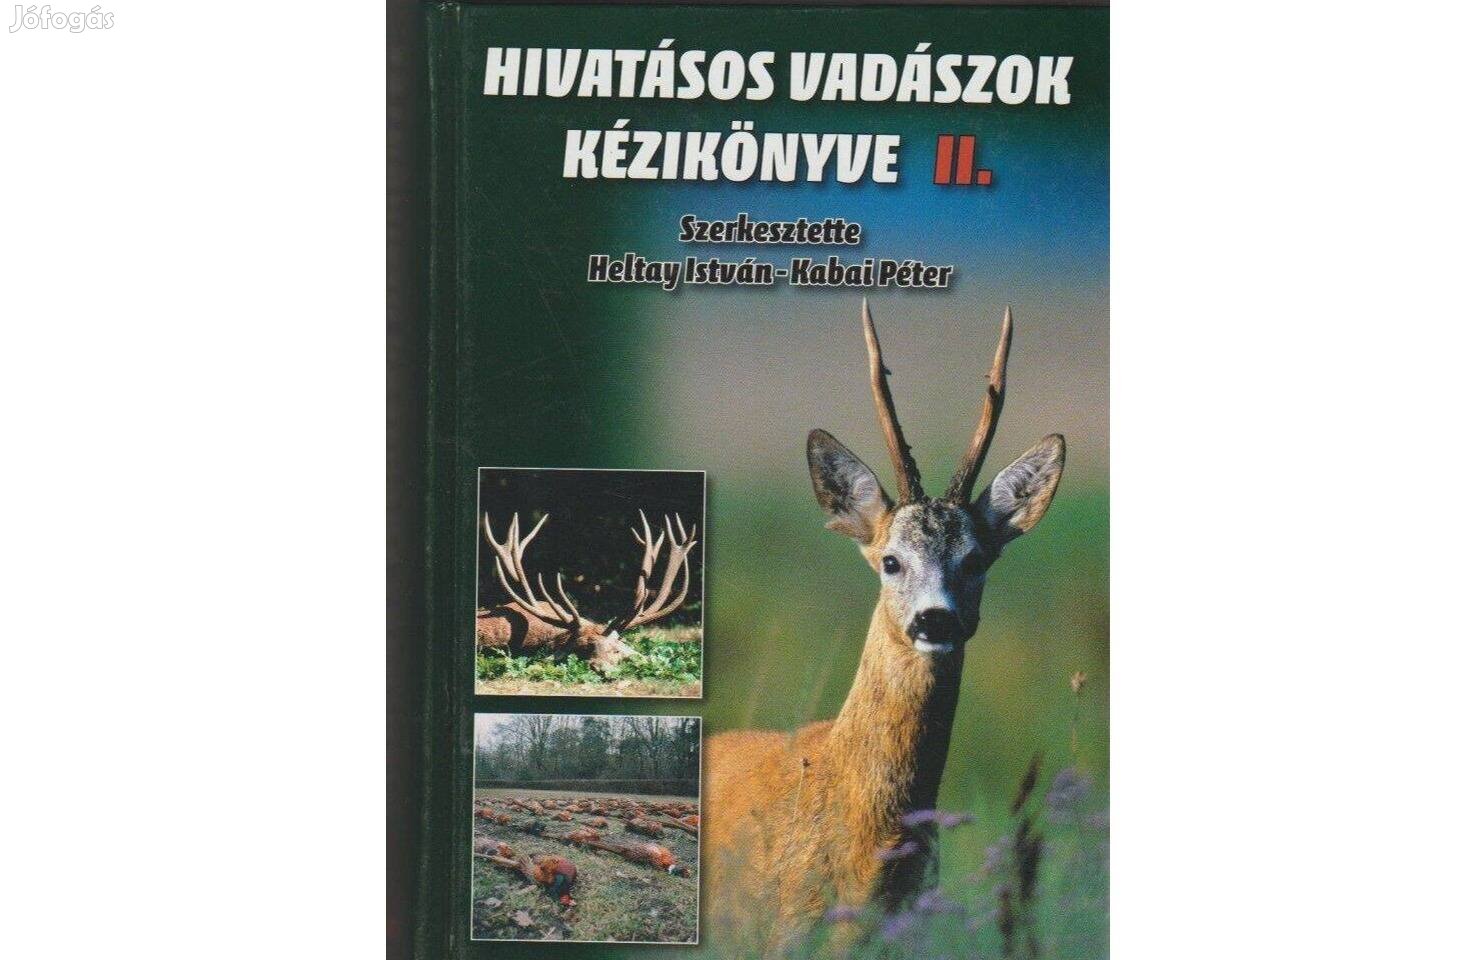 Hivatásos vadászok kézikönyve I. és II. (Heltay István, Kabai Péter)